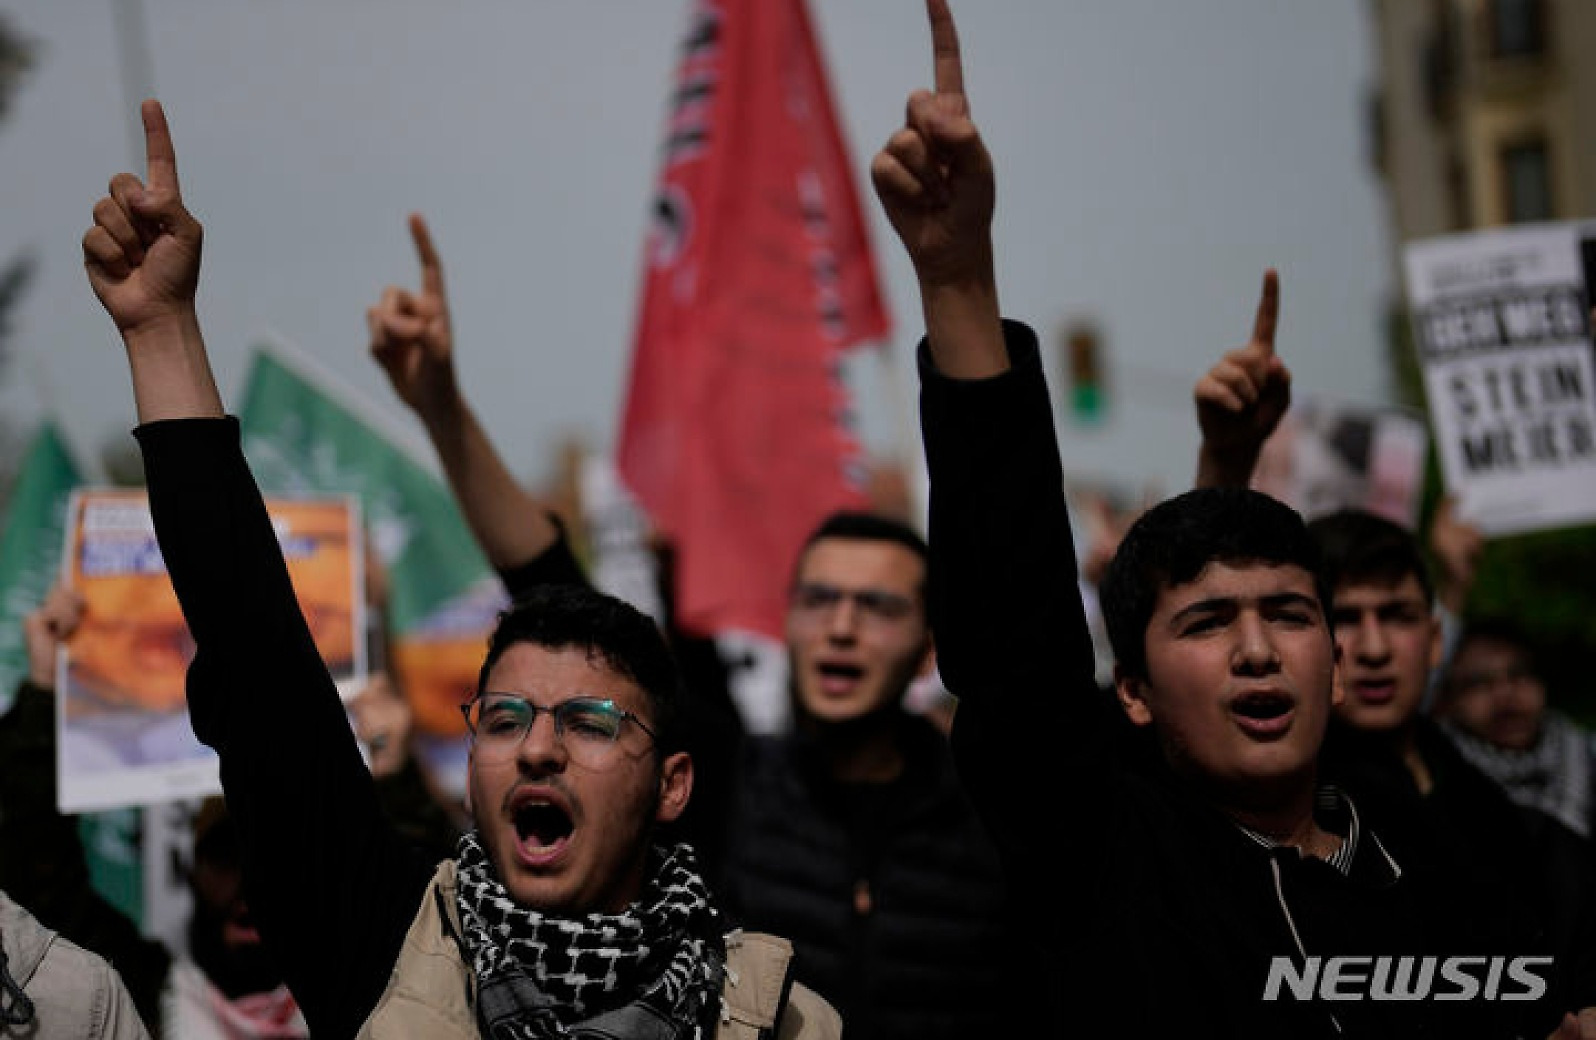 "독일, 이스라엘 지지 반대" 외치는 튀르키예 시위대